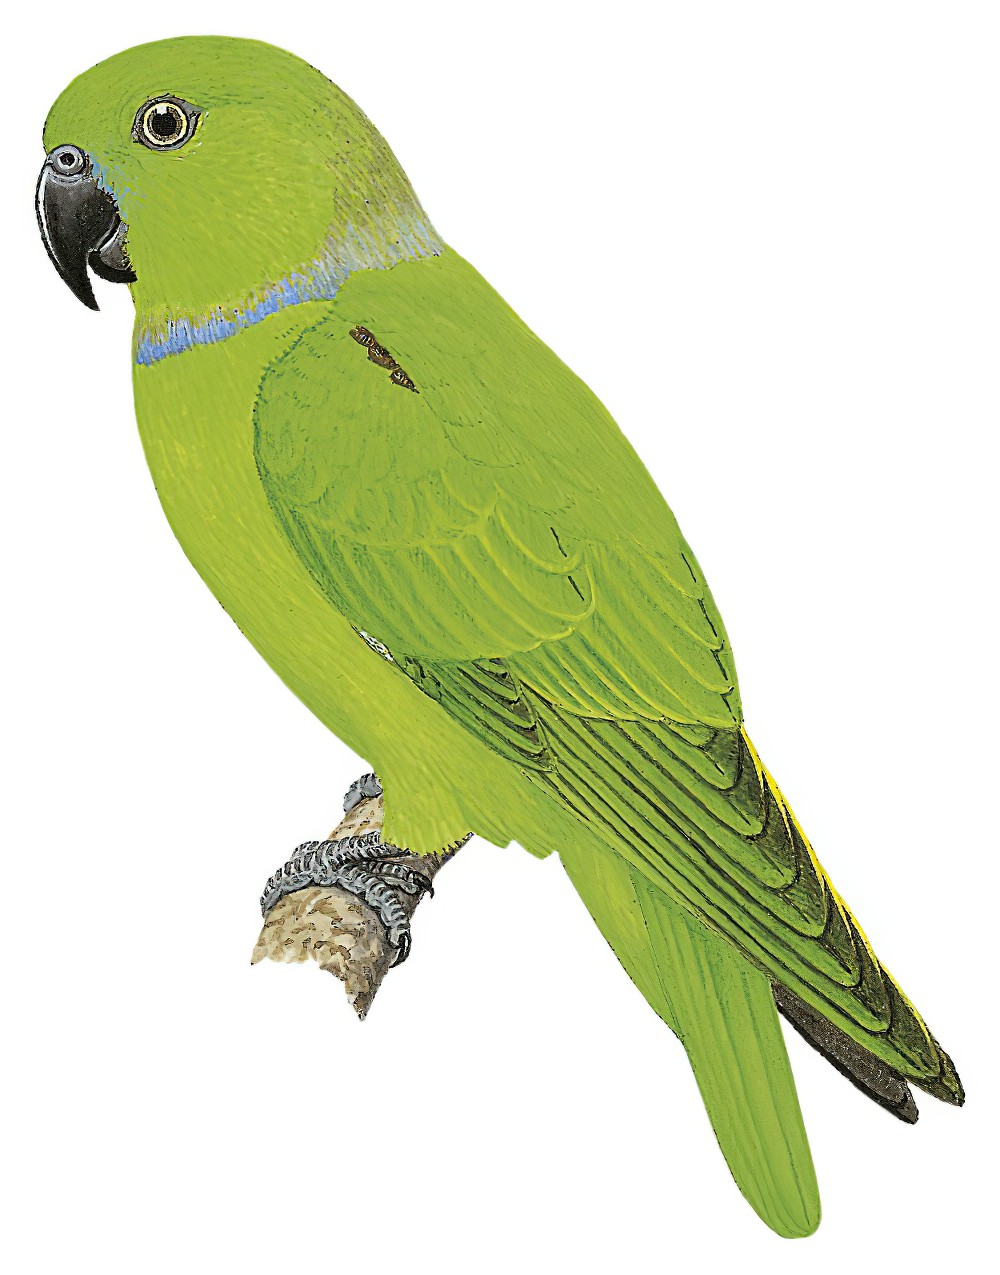 Blue-collared Parrot / Geoffroyus simplex